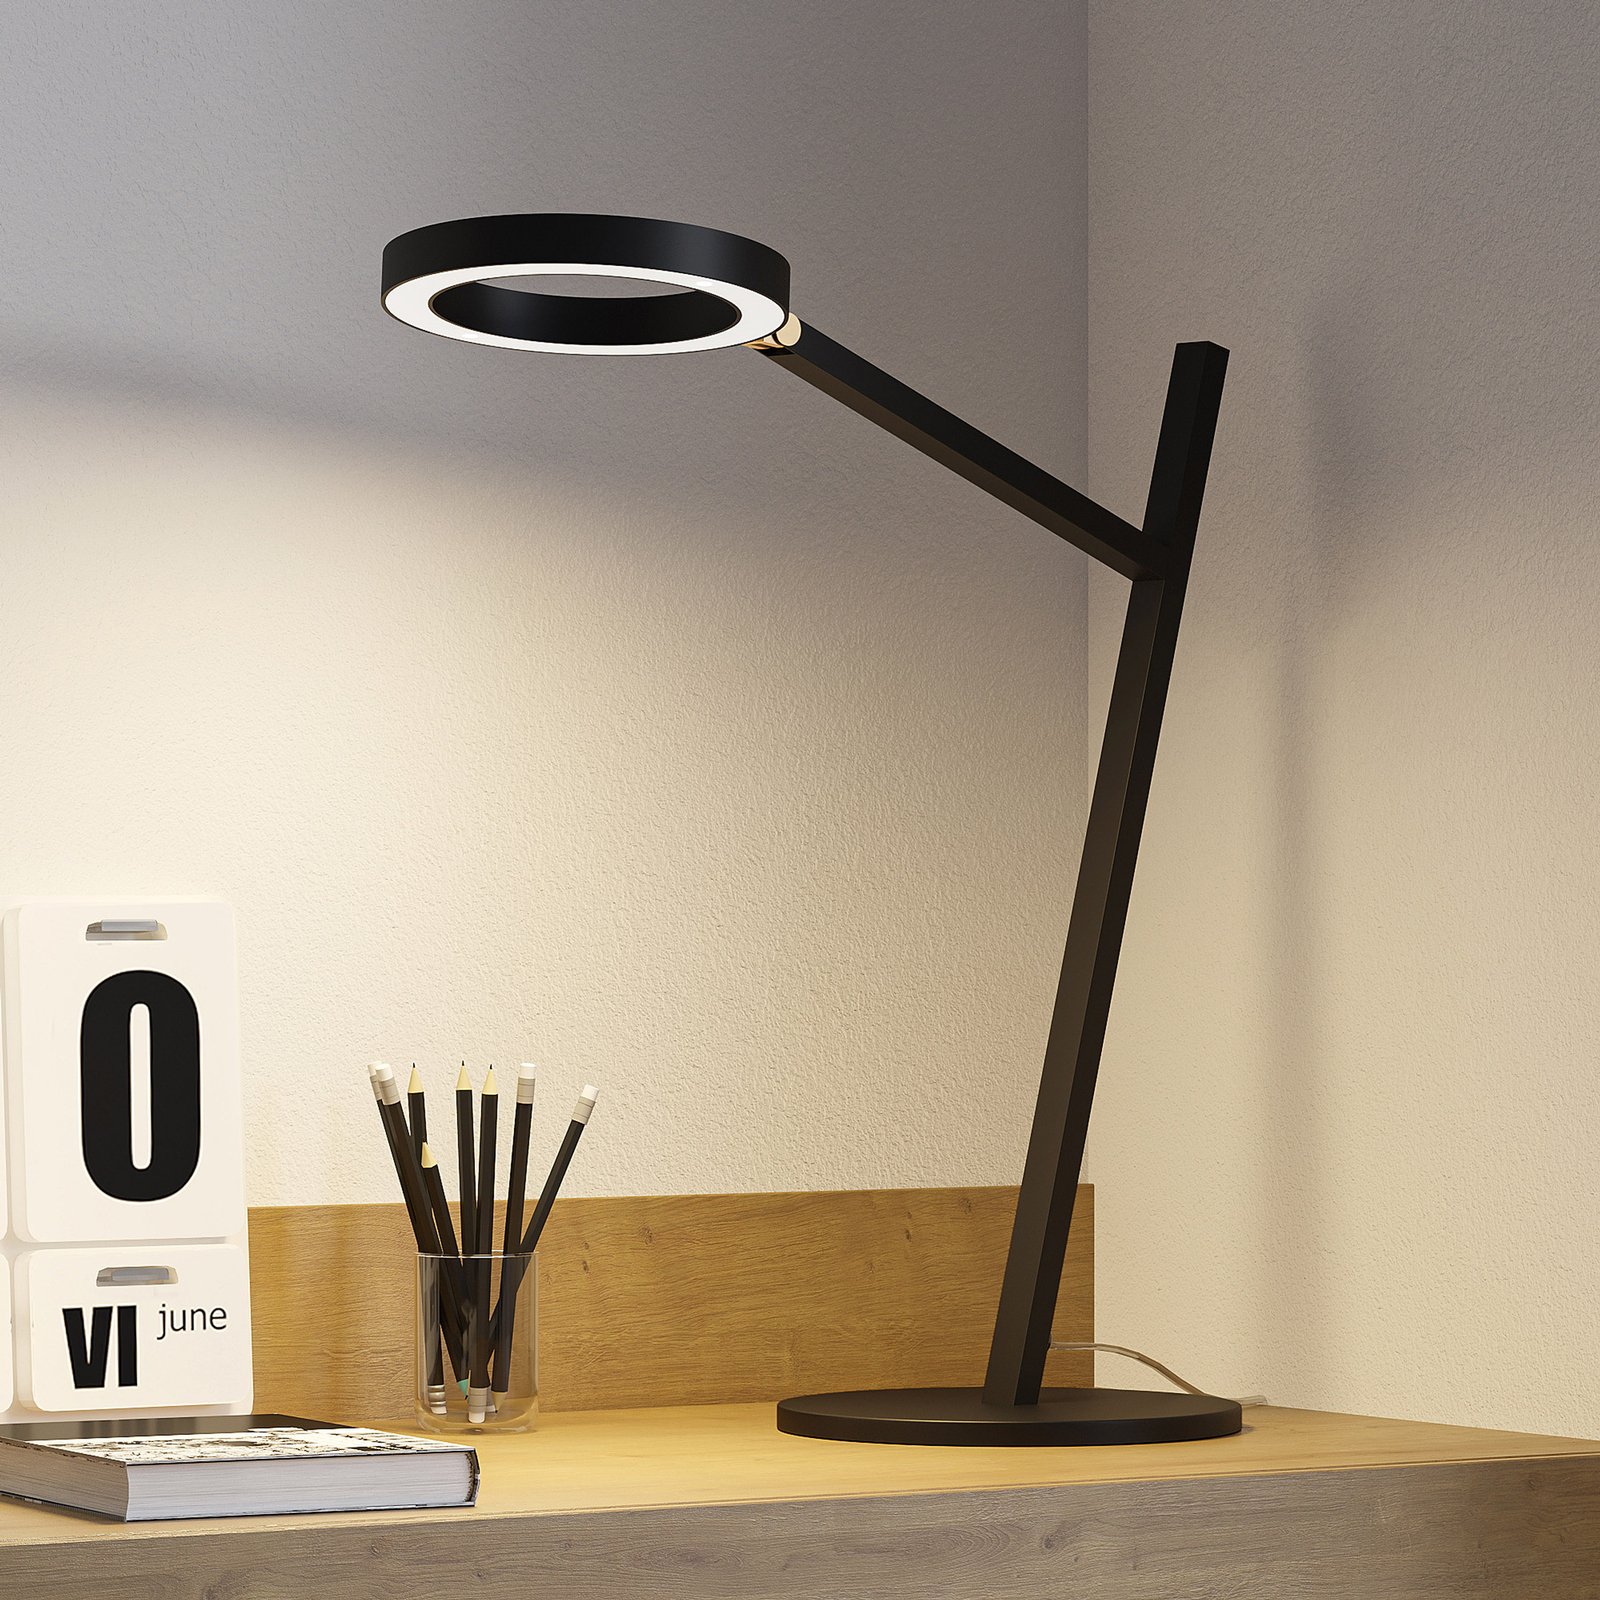 Panter Geven bovenste Lucande Nimbe LED tafellamp, zwart, dimmer | Lampen24.nl